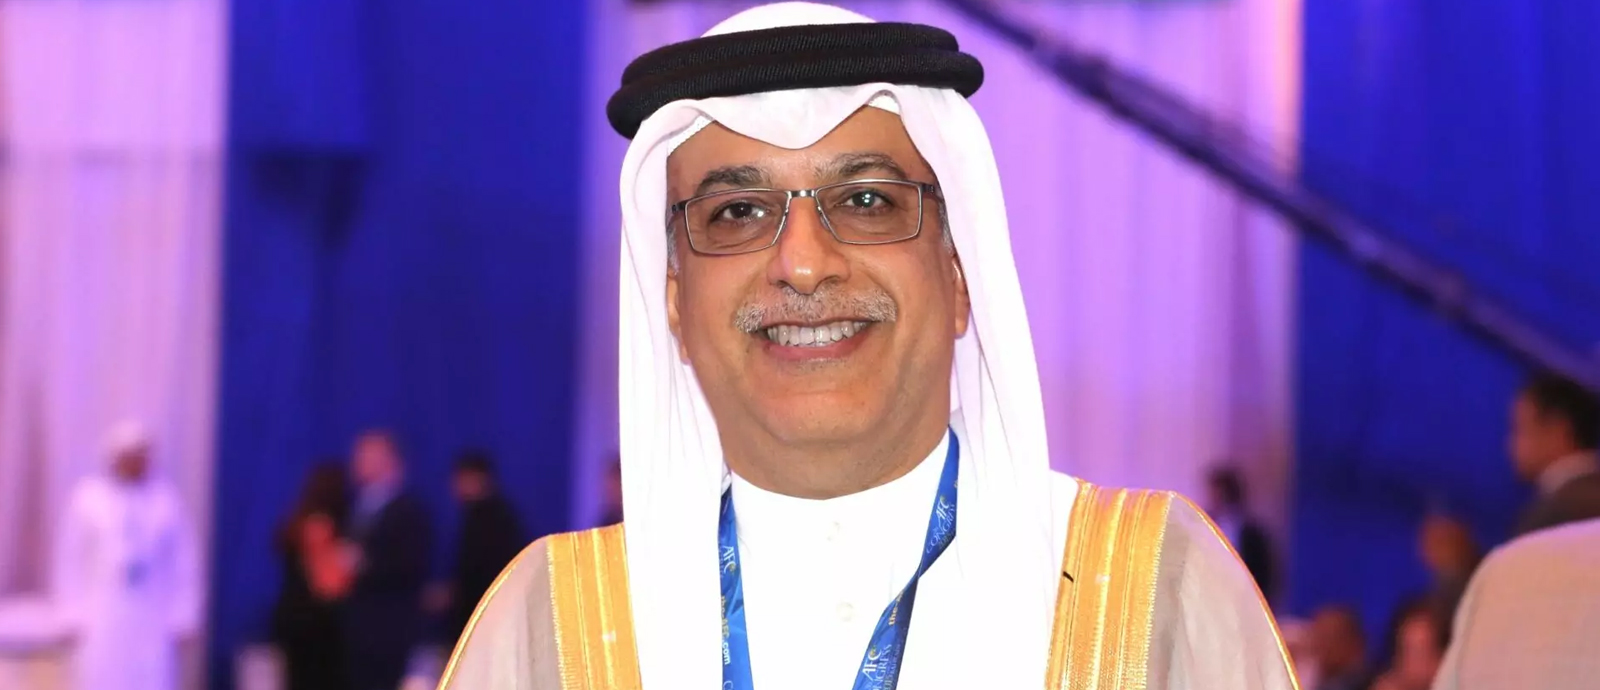 Shaikh Salman bin Ebrahim Al Khalifa